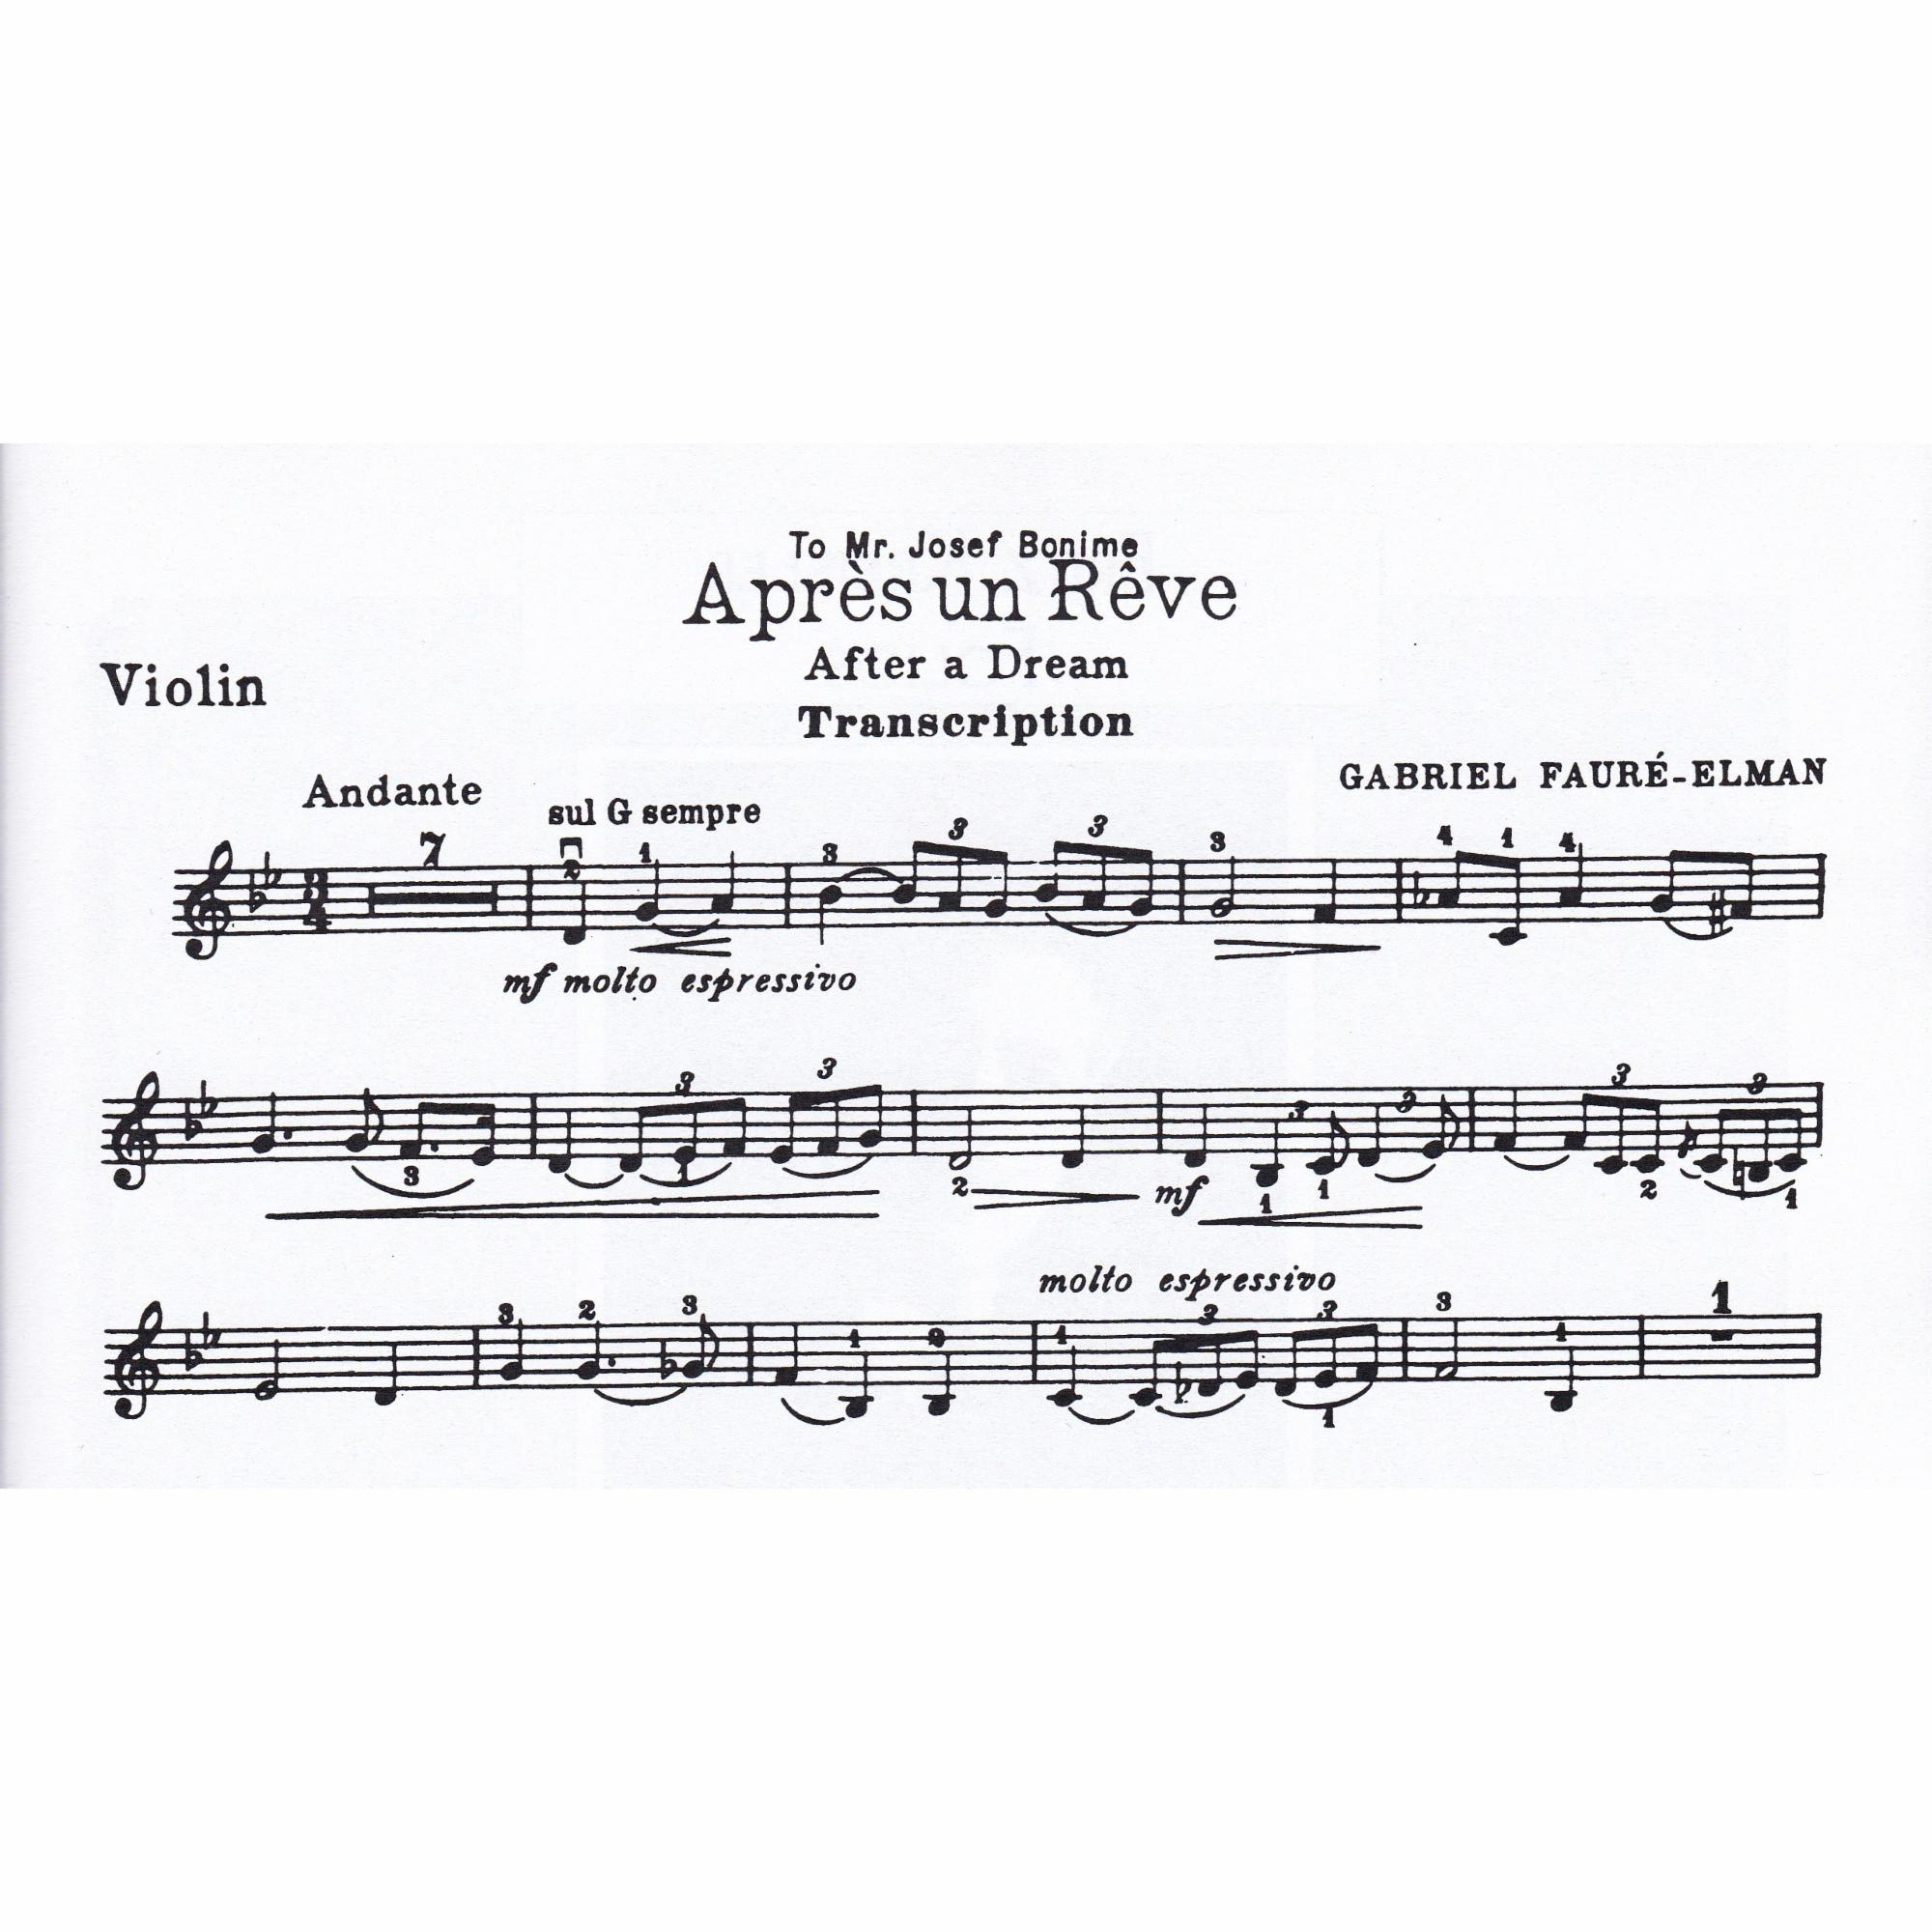 Apres un reve for Violin and Piano